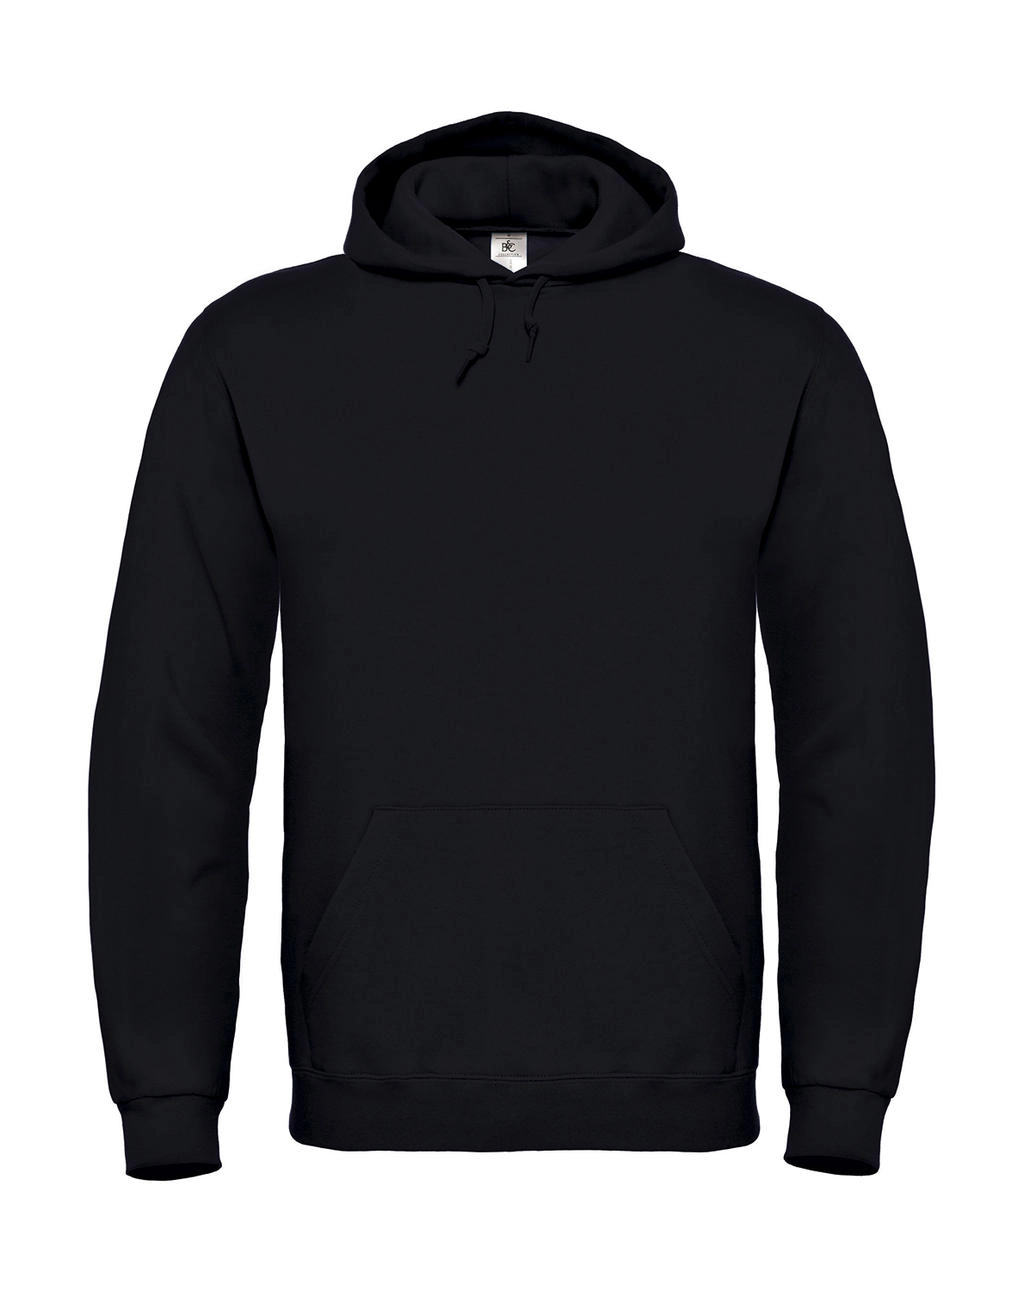 ID.003 Cotton Rich Hooded Sweatshirt zum Besticken und Bedrucken in der Farbe Black mit Ihren Logo, Schriftzug oder Motiv.